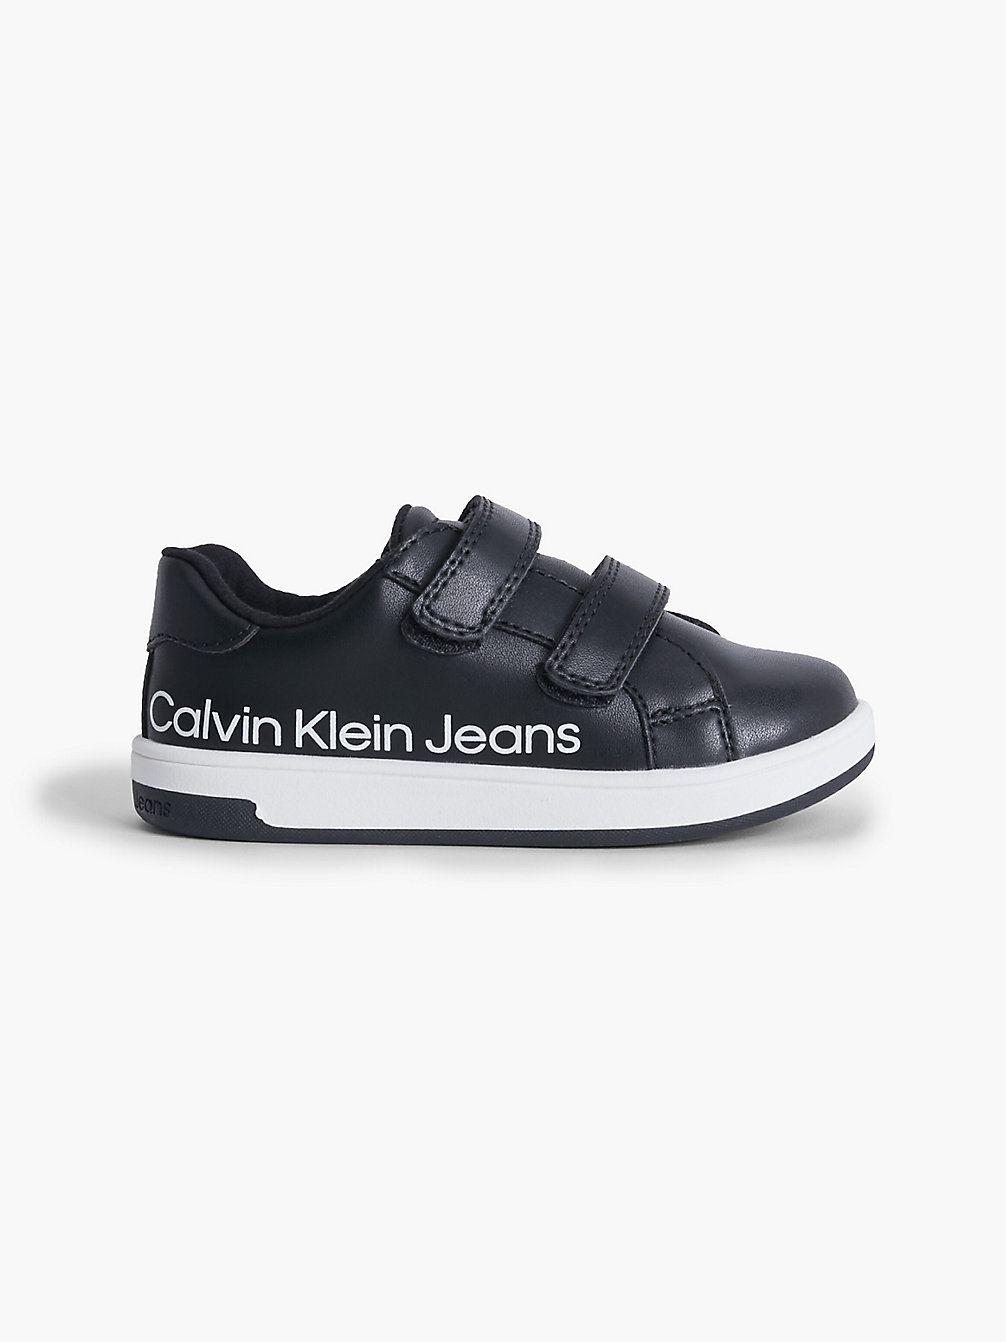 BLACK Recycelte Sneakers Für Kleinkinder Und Kinder undefined kids unisex Calvin Klein